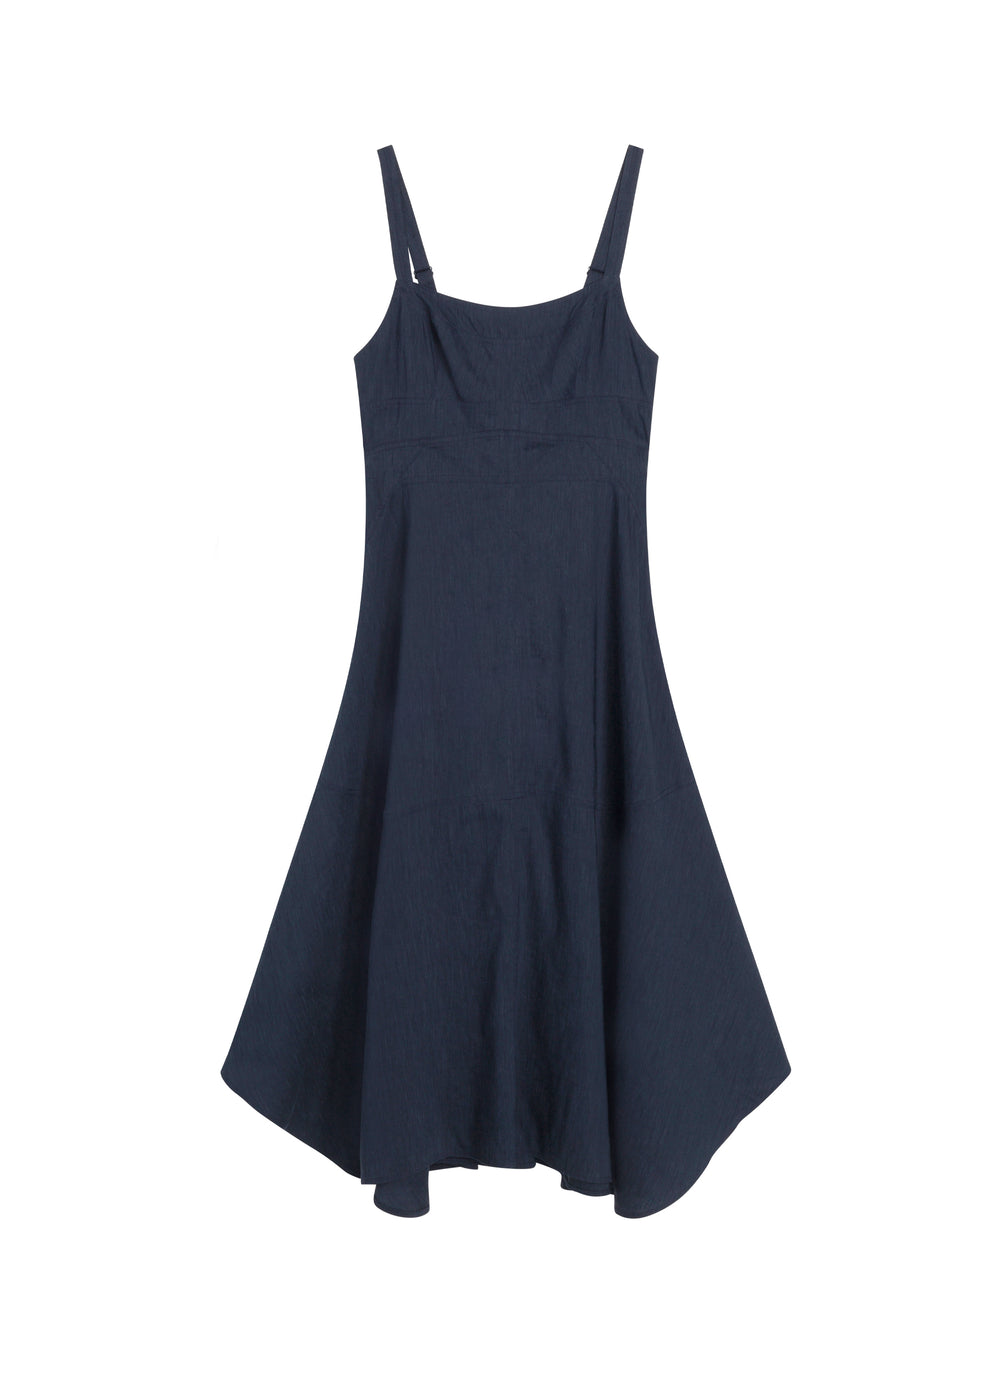 flatlay of navy blue sleeveless midi dress